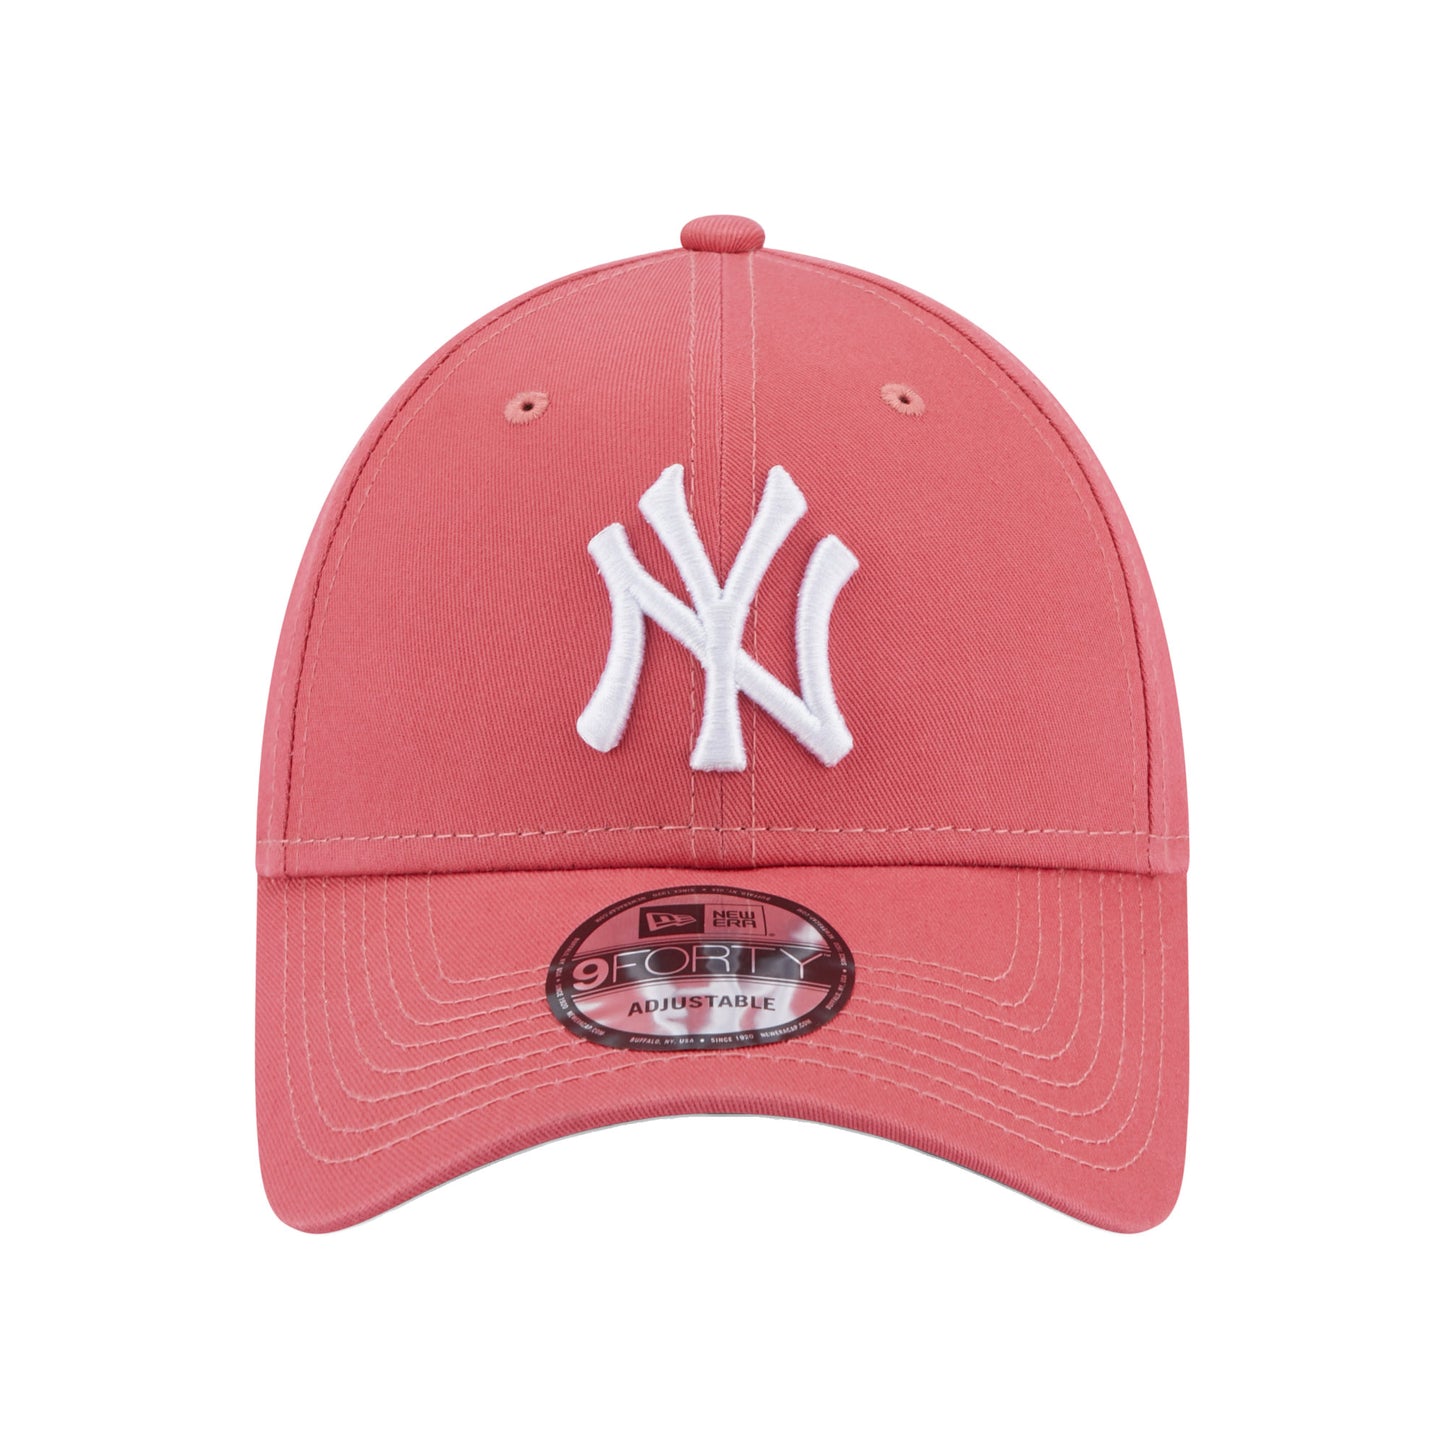 New York Yankees 9FORTY New Era Cap dark rose